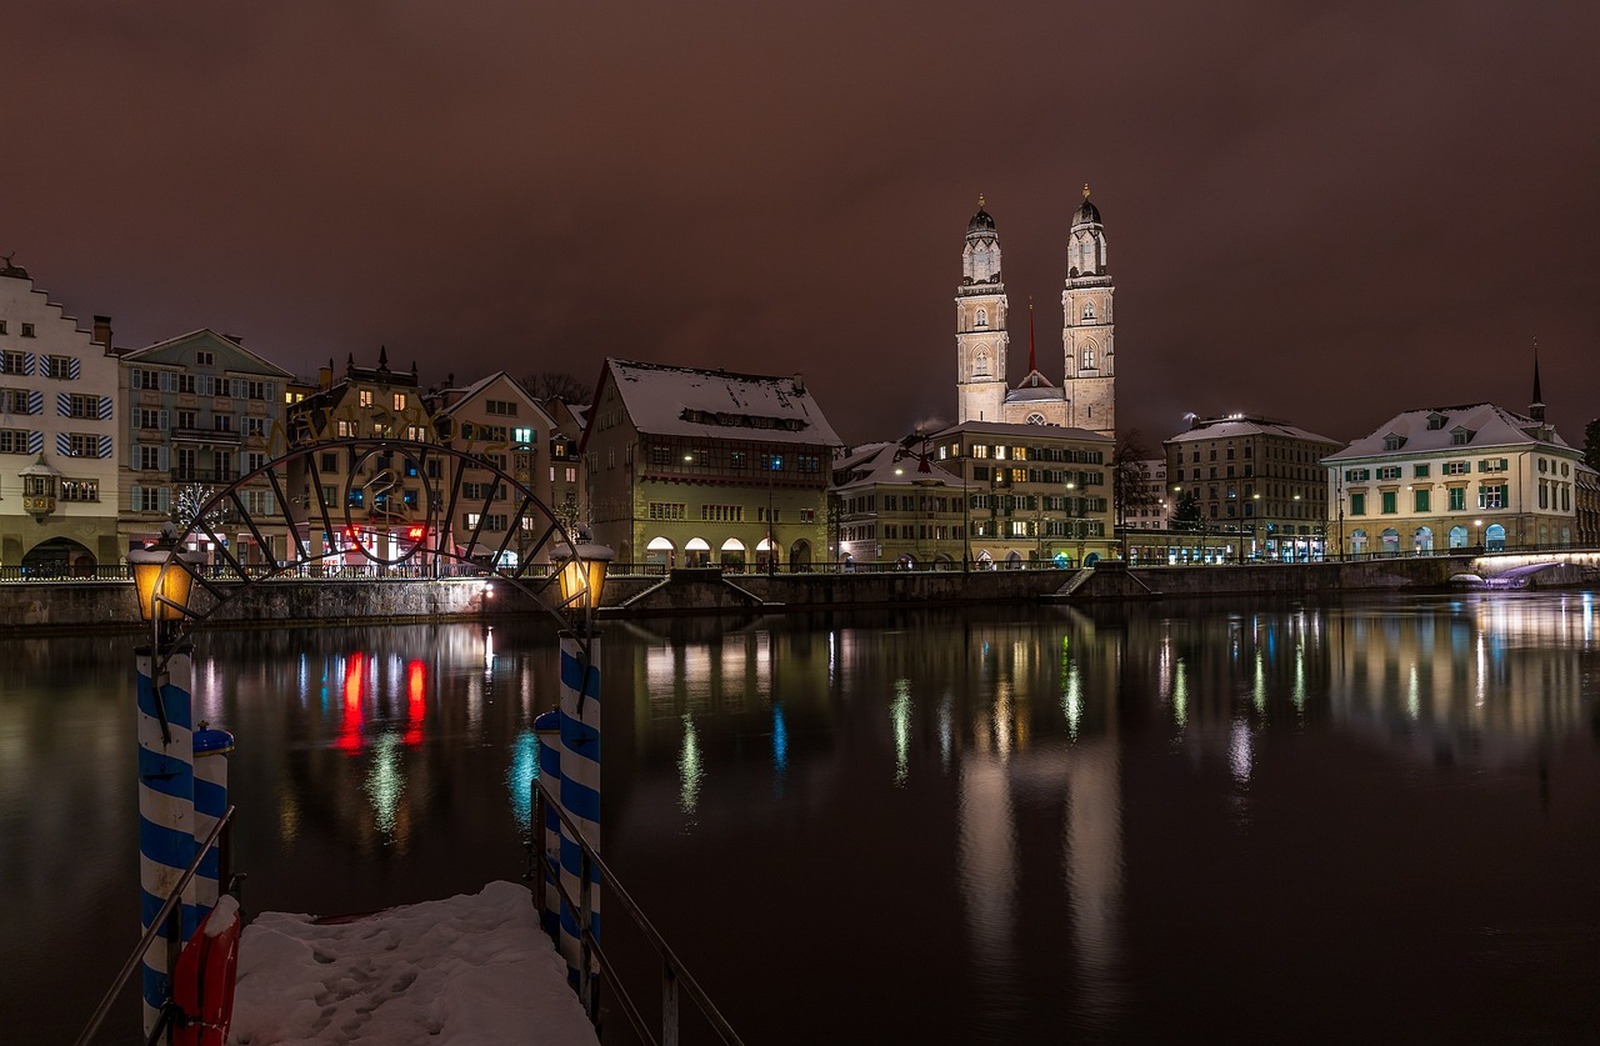 Image of Rathausbrucke & Storchen Hotel Zurich by Team PhotoHound